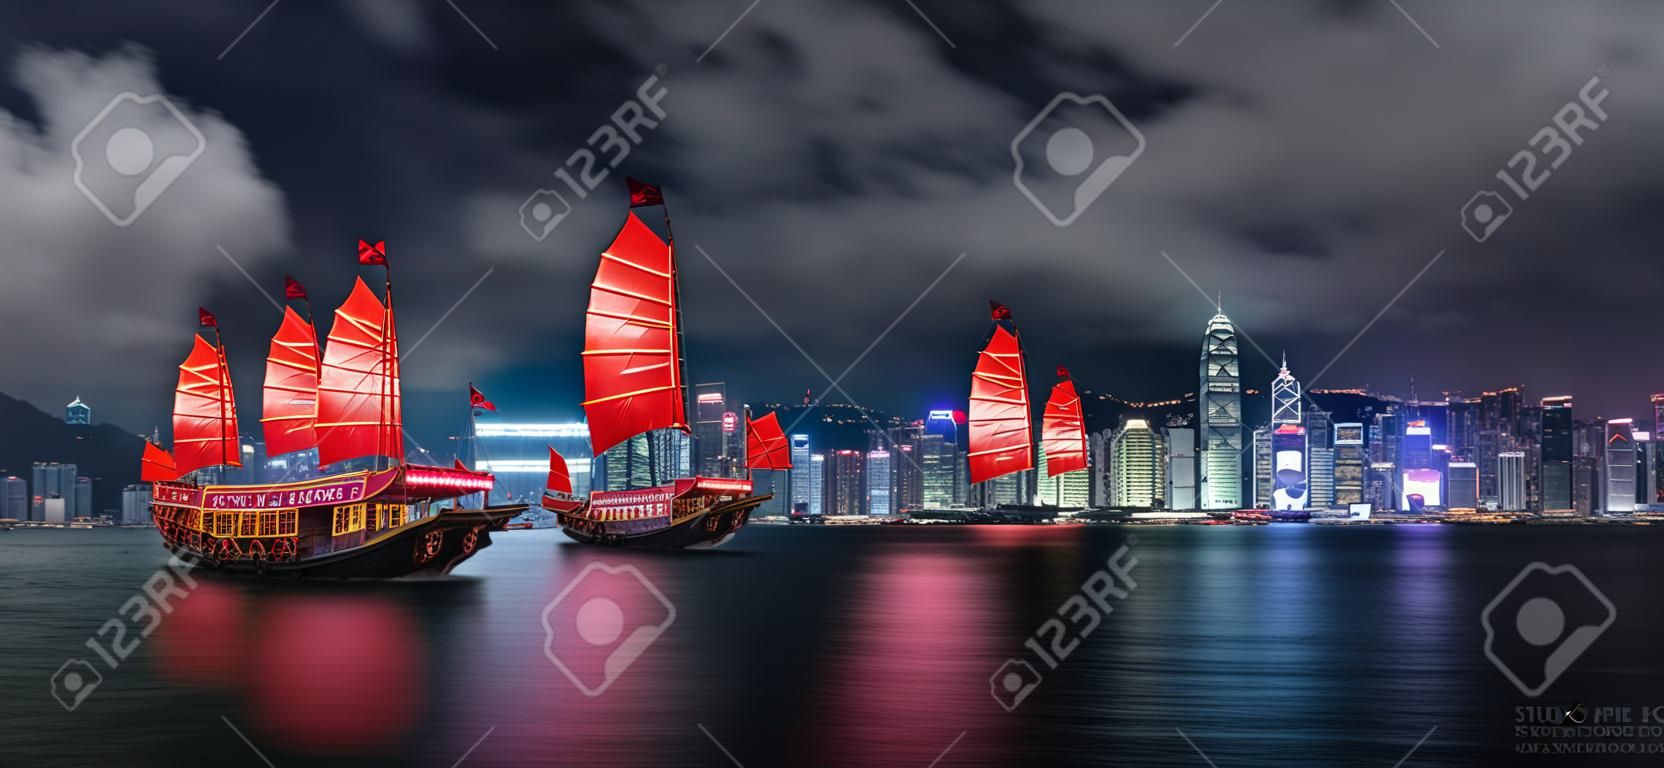 Basura turística cruzando el puerto de victoria en hong kong